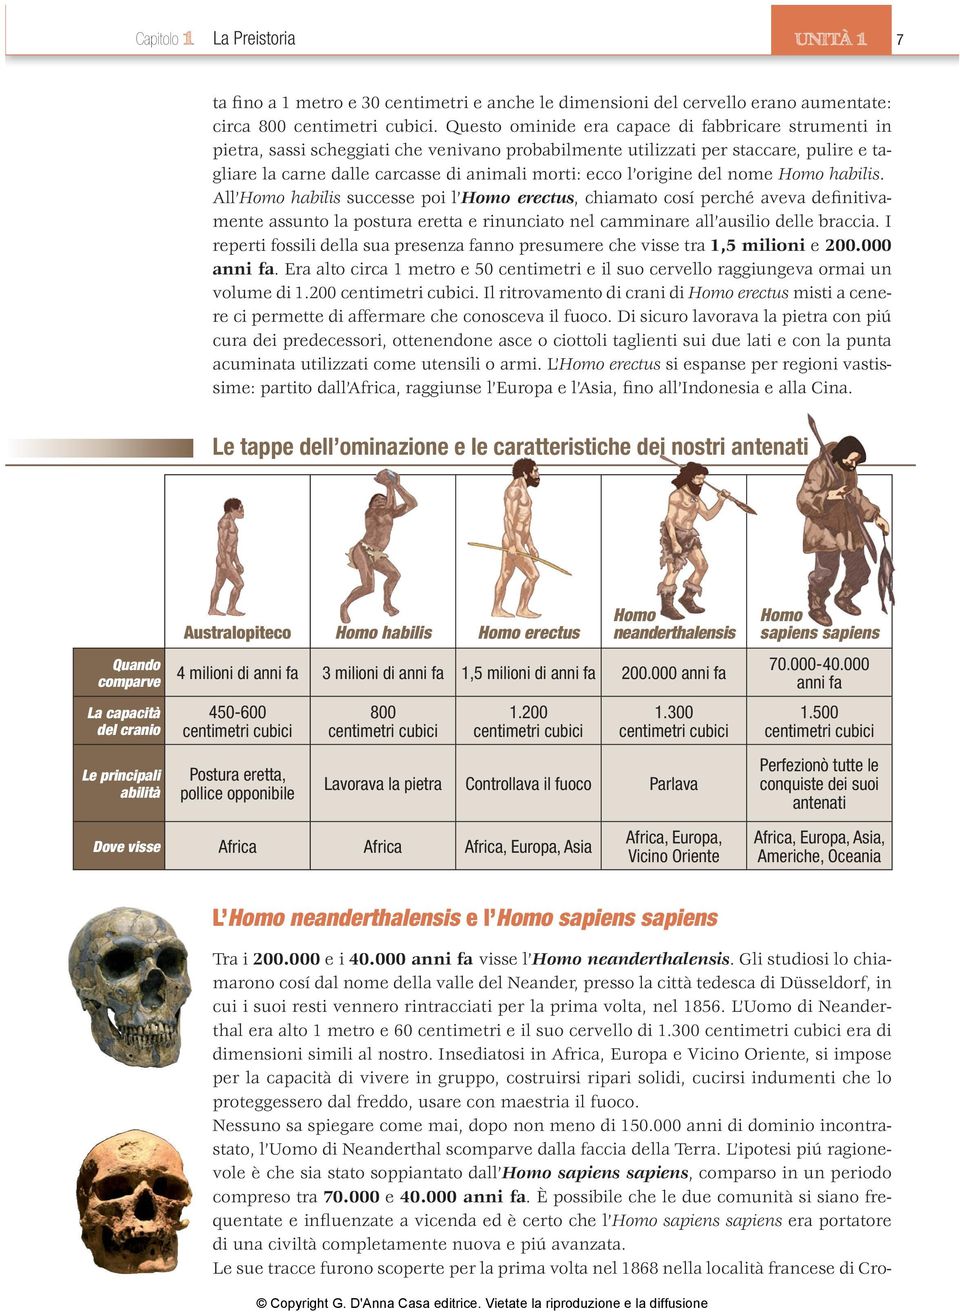 origine del nome Homo habilis. All Homo habilis successe poi l Homo erectus, chiamato cosí perché aveva definitivamente assunto la postura eretta e rinunciato nel camminare all ausilio delle braccia.